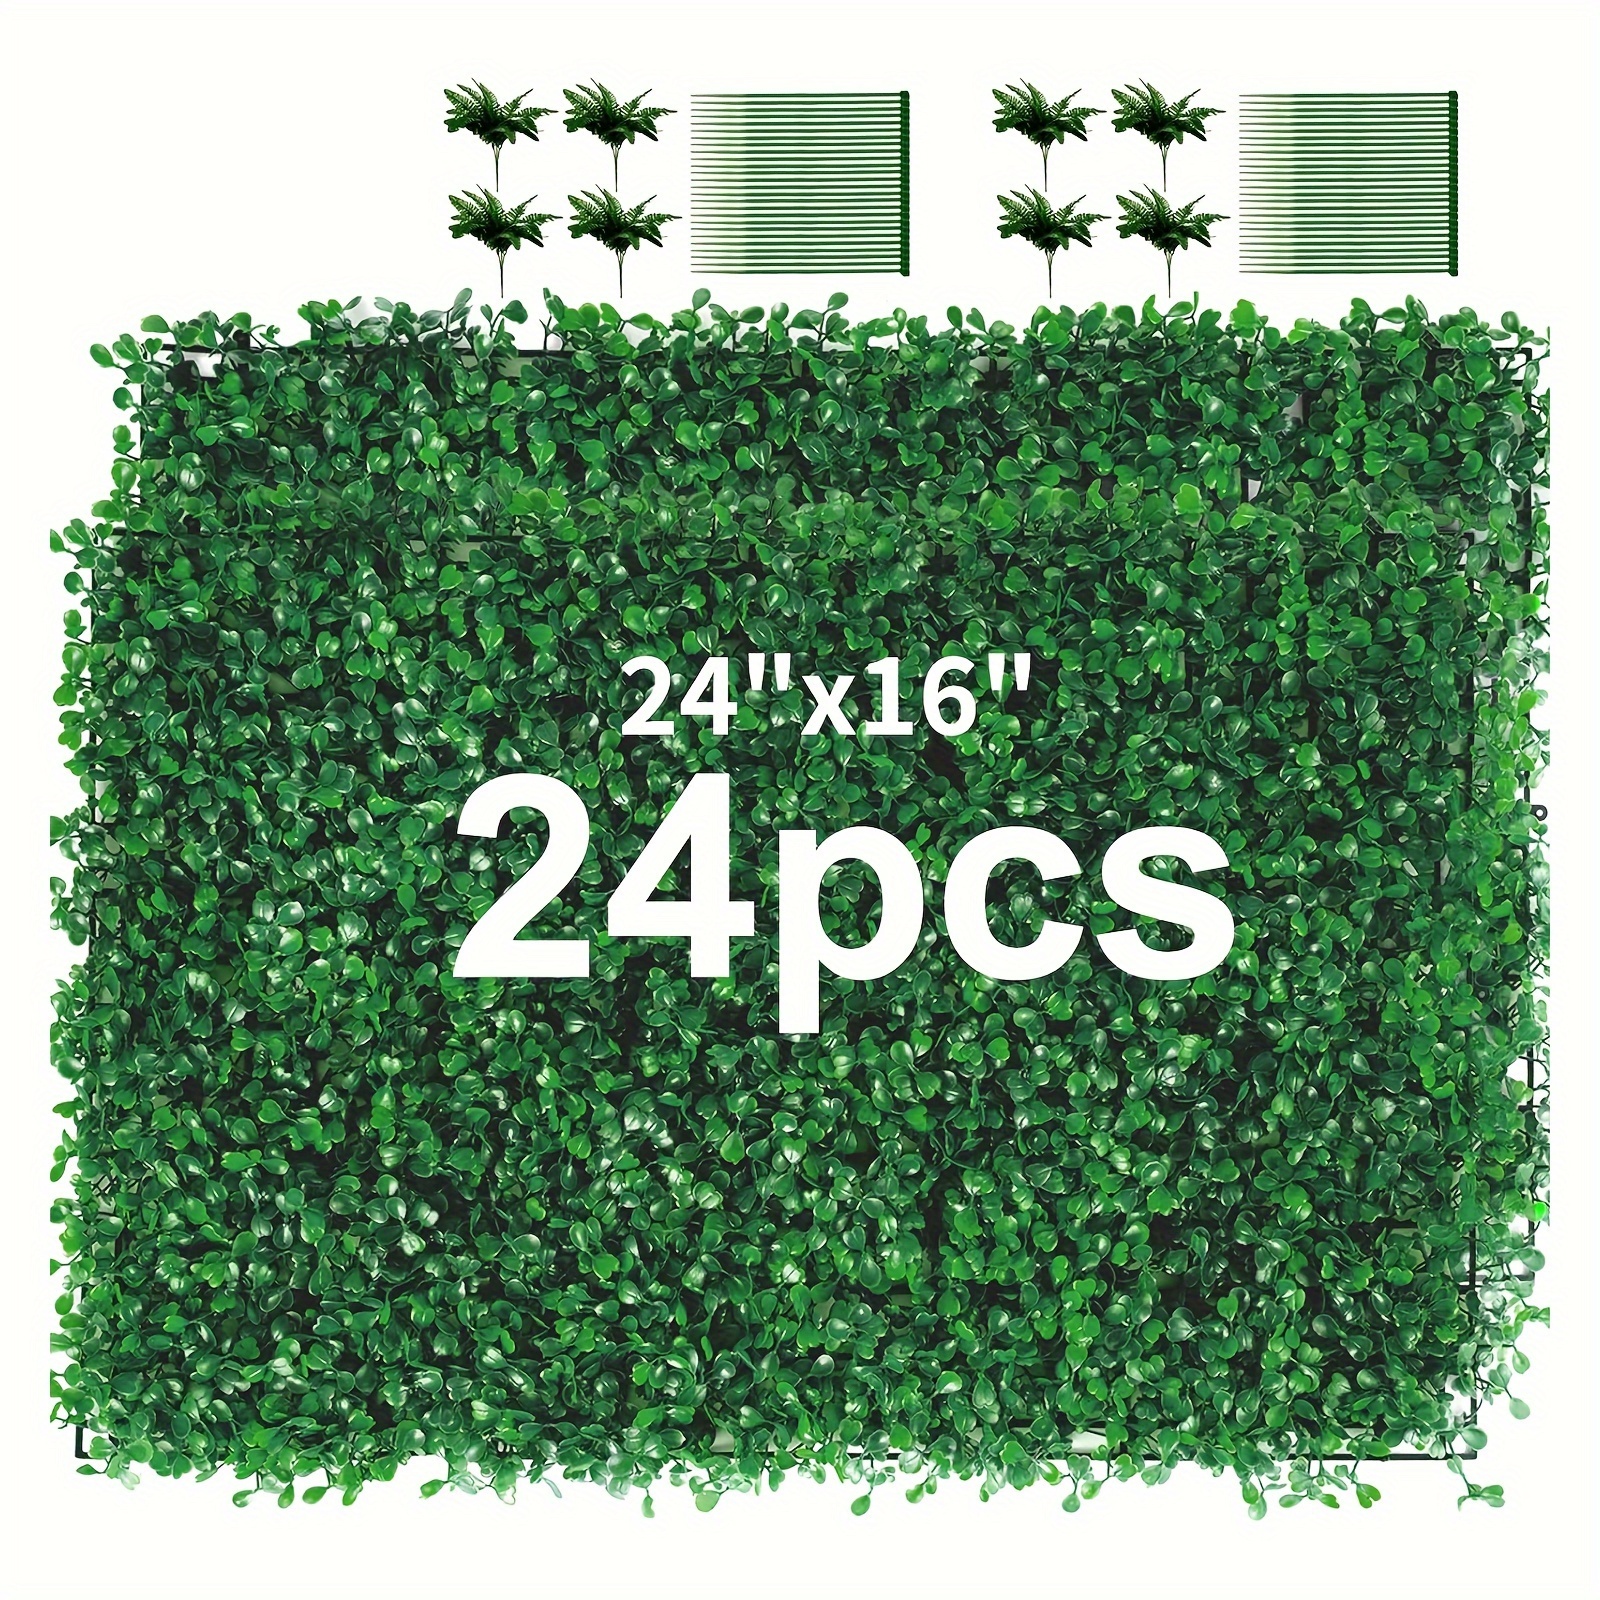 

24 Pieces 24"x 16" Artificial Boxwood Panel, Grass Wall Panel, Boxwood Hedge Wall Panels Uv Protected Suitable For Artificial Green Wall Decor, Fence Garden Wedding Backyard Decor-dark Green